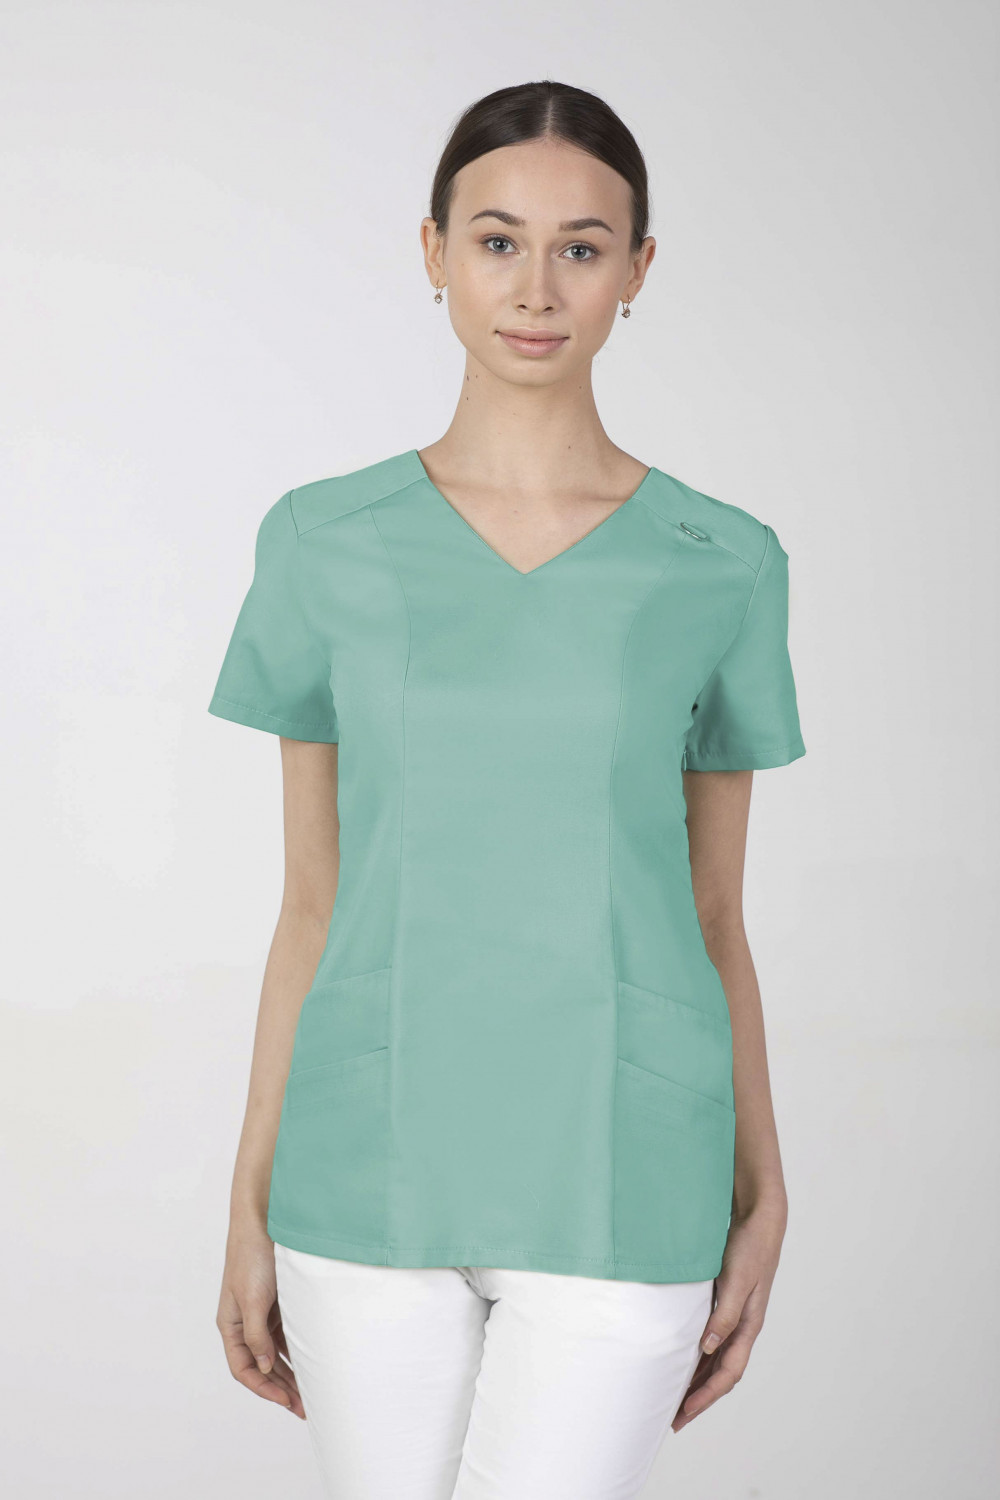 Bluza medyczna damska M-376A 26 kolorów. Mięta